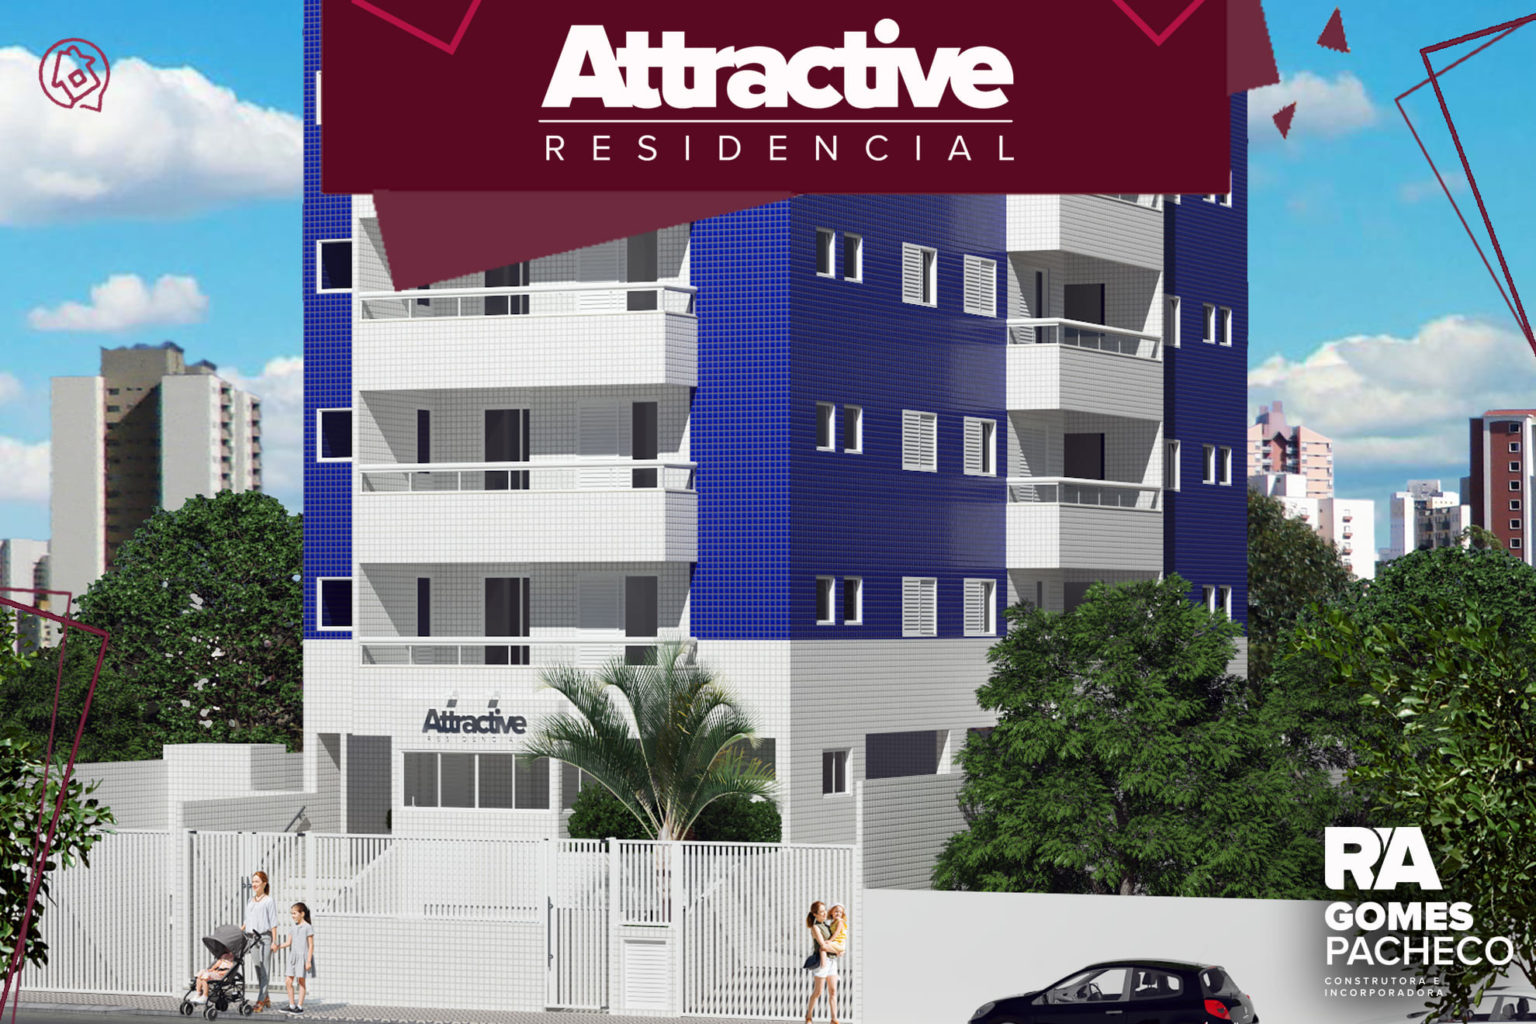 imagem-ragomespacheco-BG-residencial-attractive